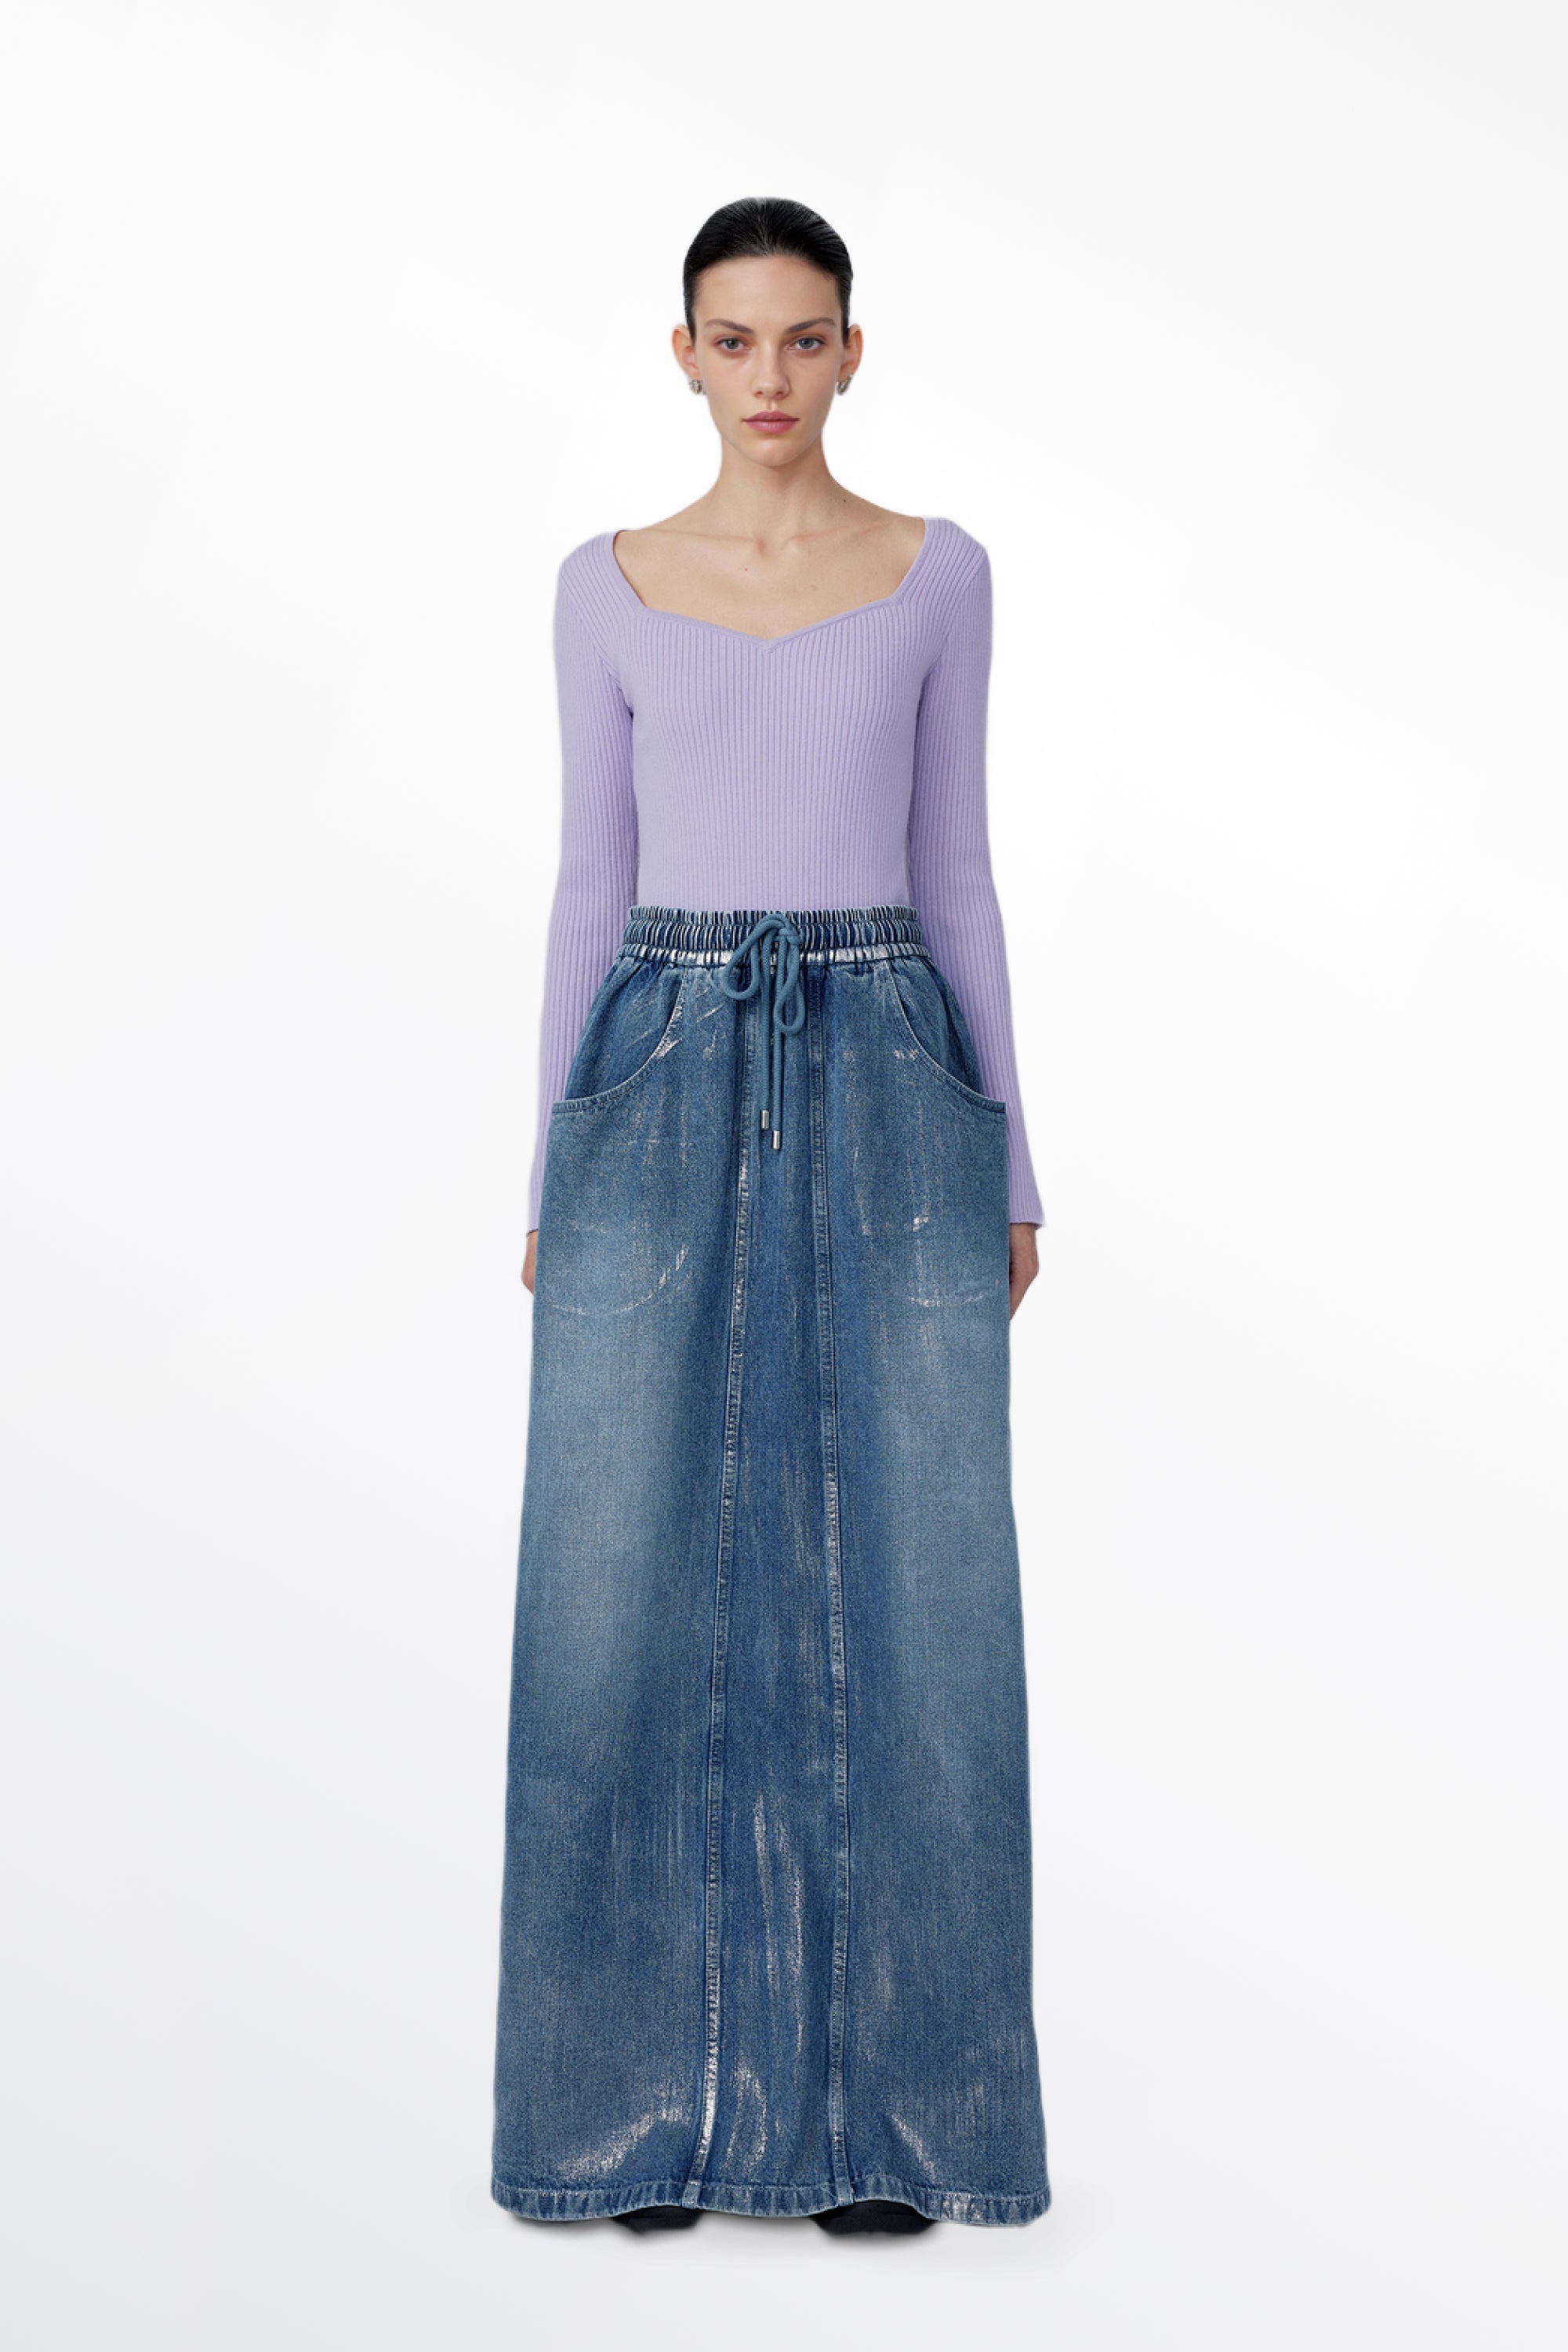 Dulsie Denim Skirt in Cotton